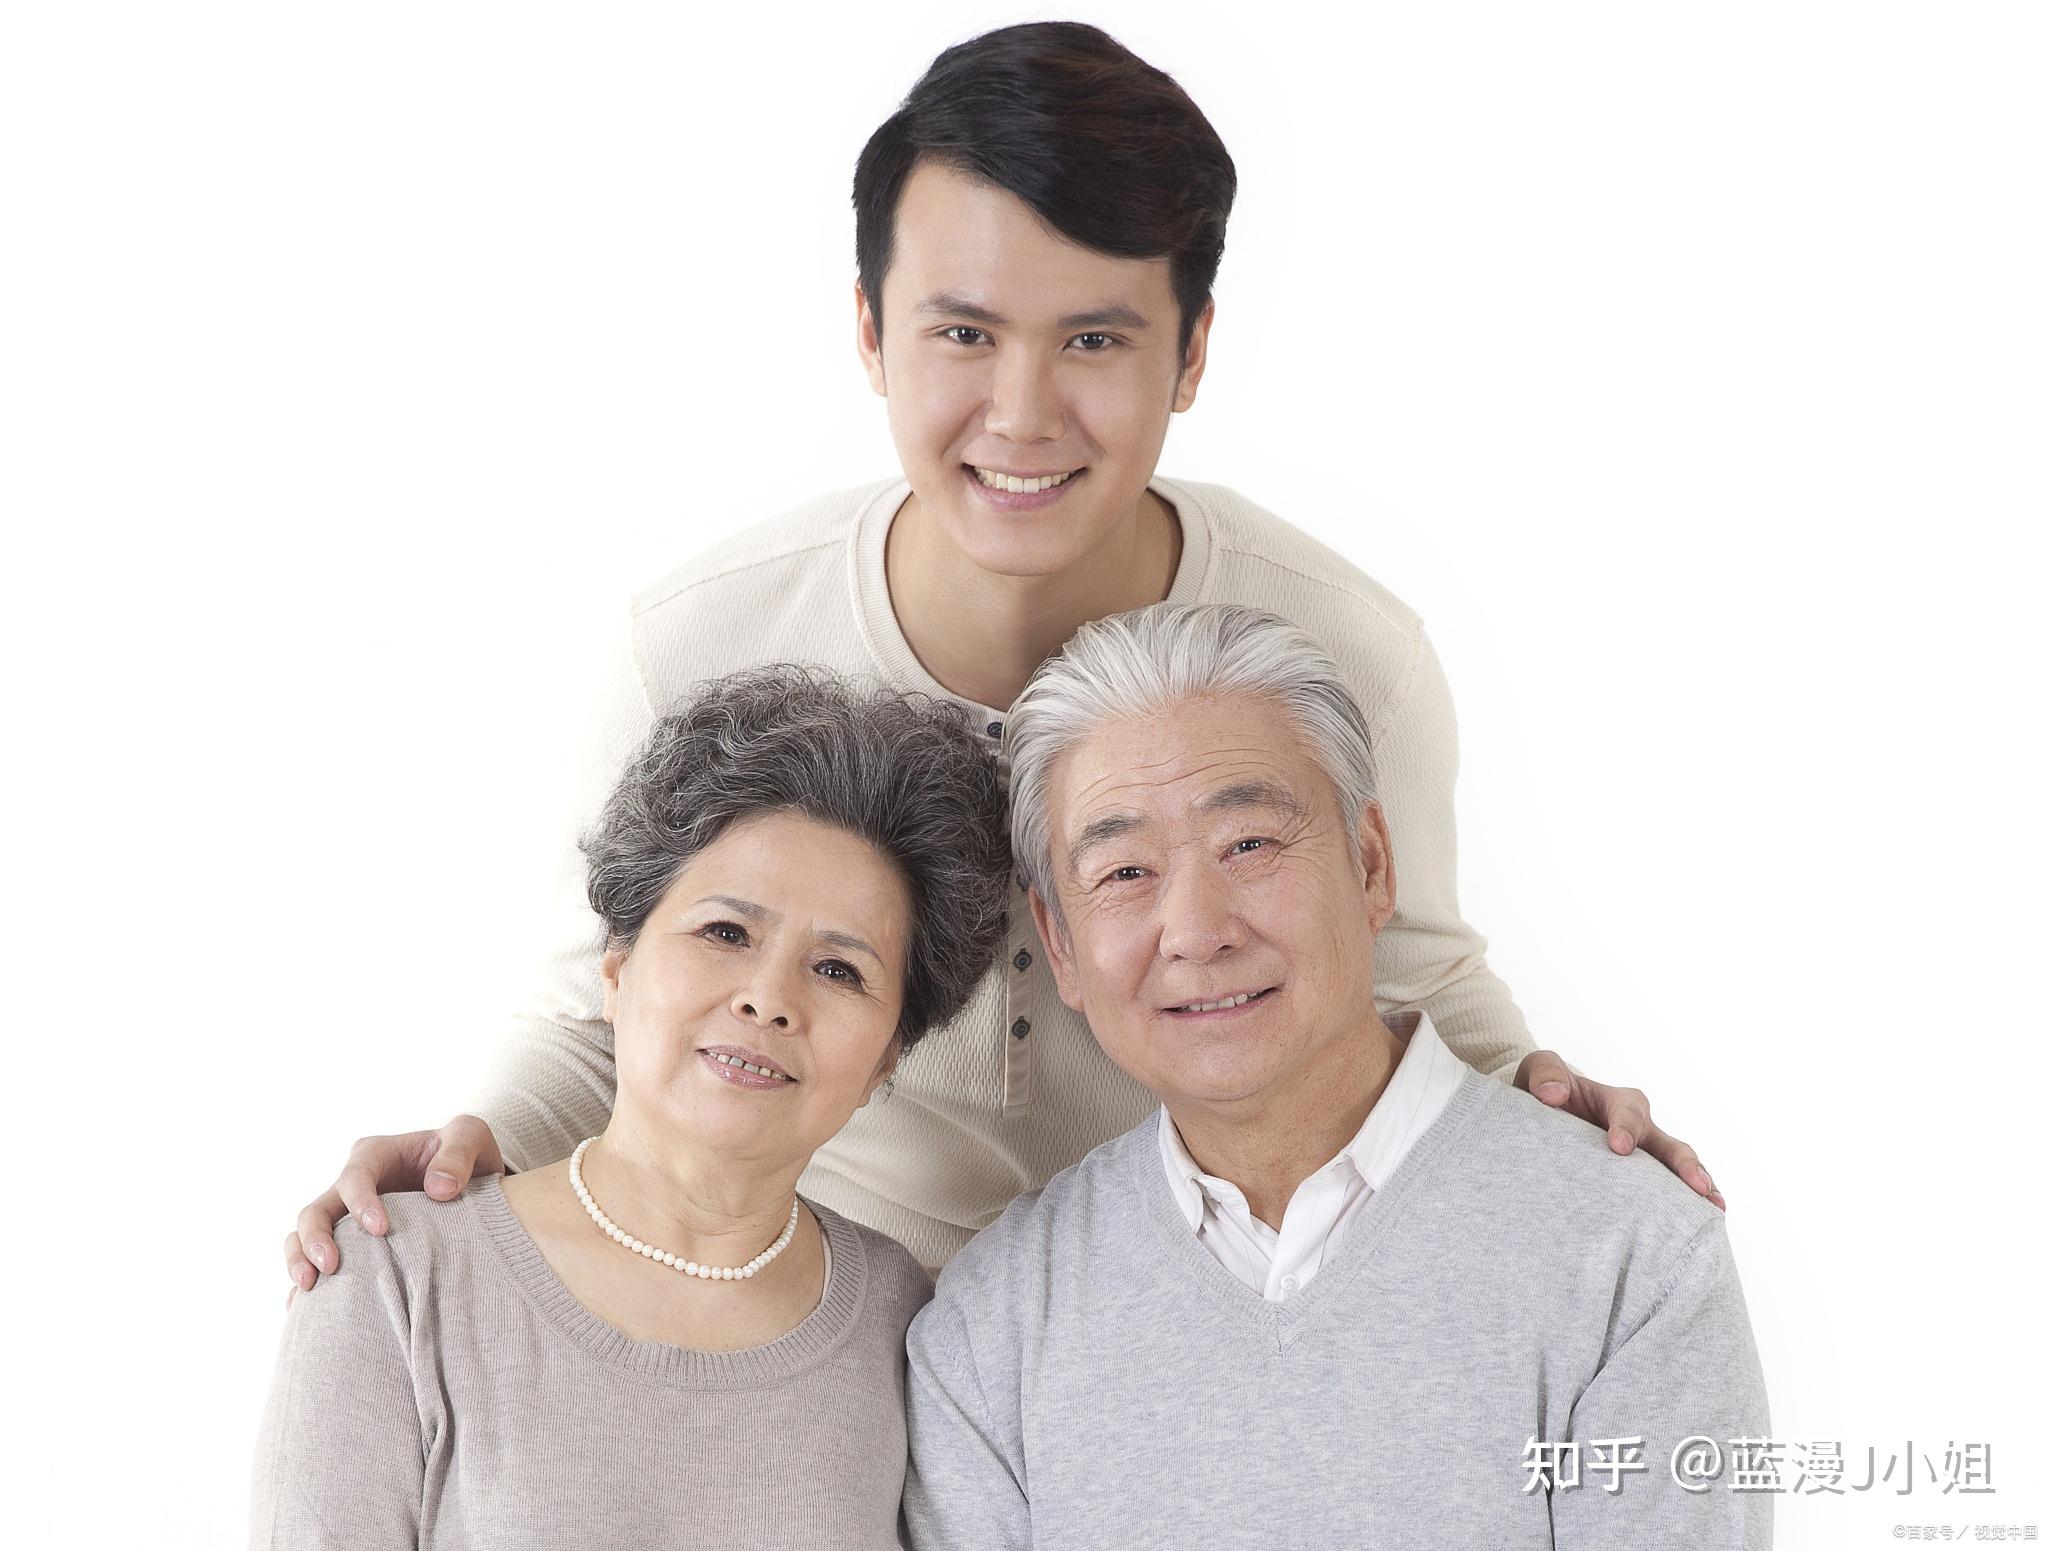 看着父母花白的头发,想想他们出来已经有几十年了,家庭的重担一扛就是